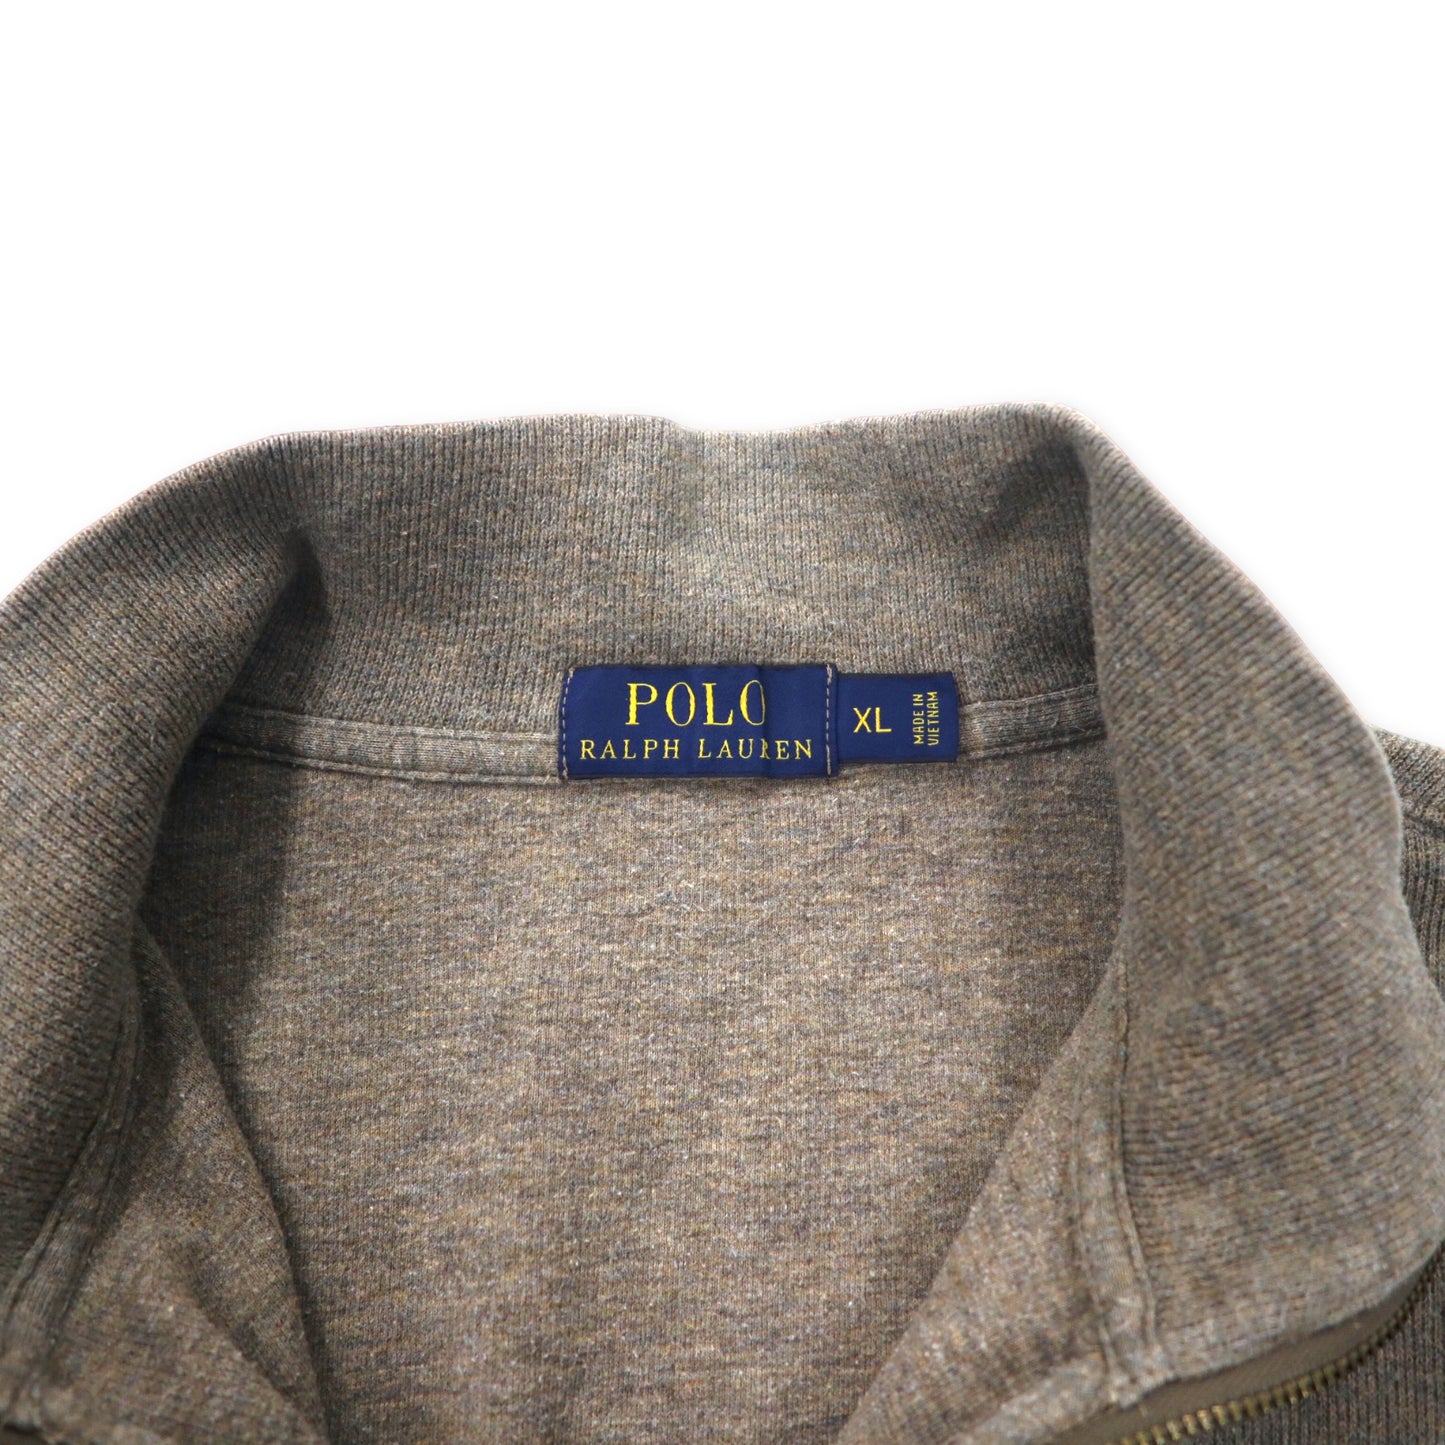 POLO RALPH LAUREN ハーフジップ ニット セーター XL カーキ コットン スモールポニー刺繍